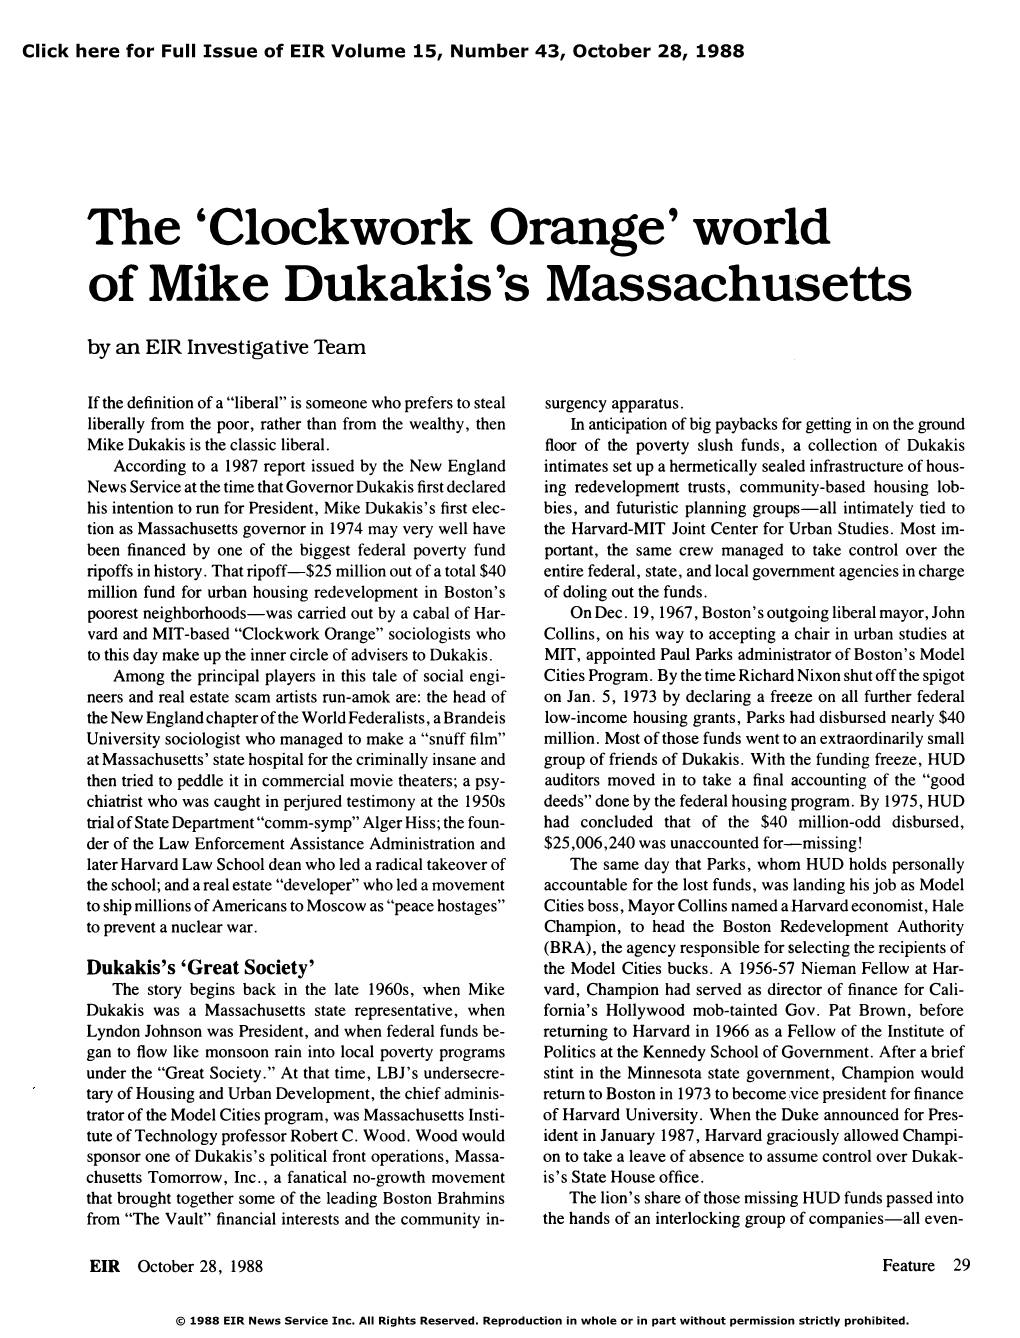 The 'Clockwork Orange' World of Mike Dukakis's Massachusetts